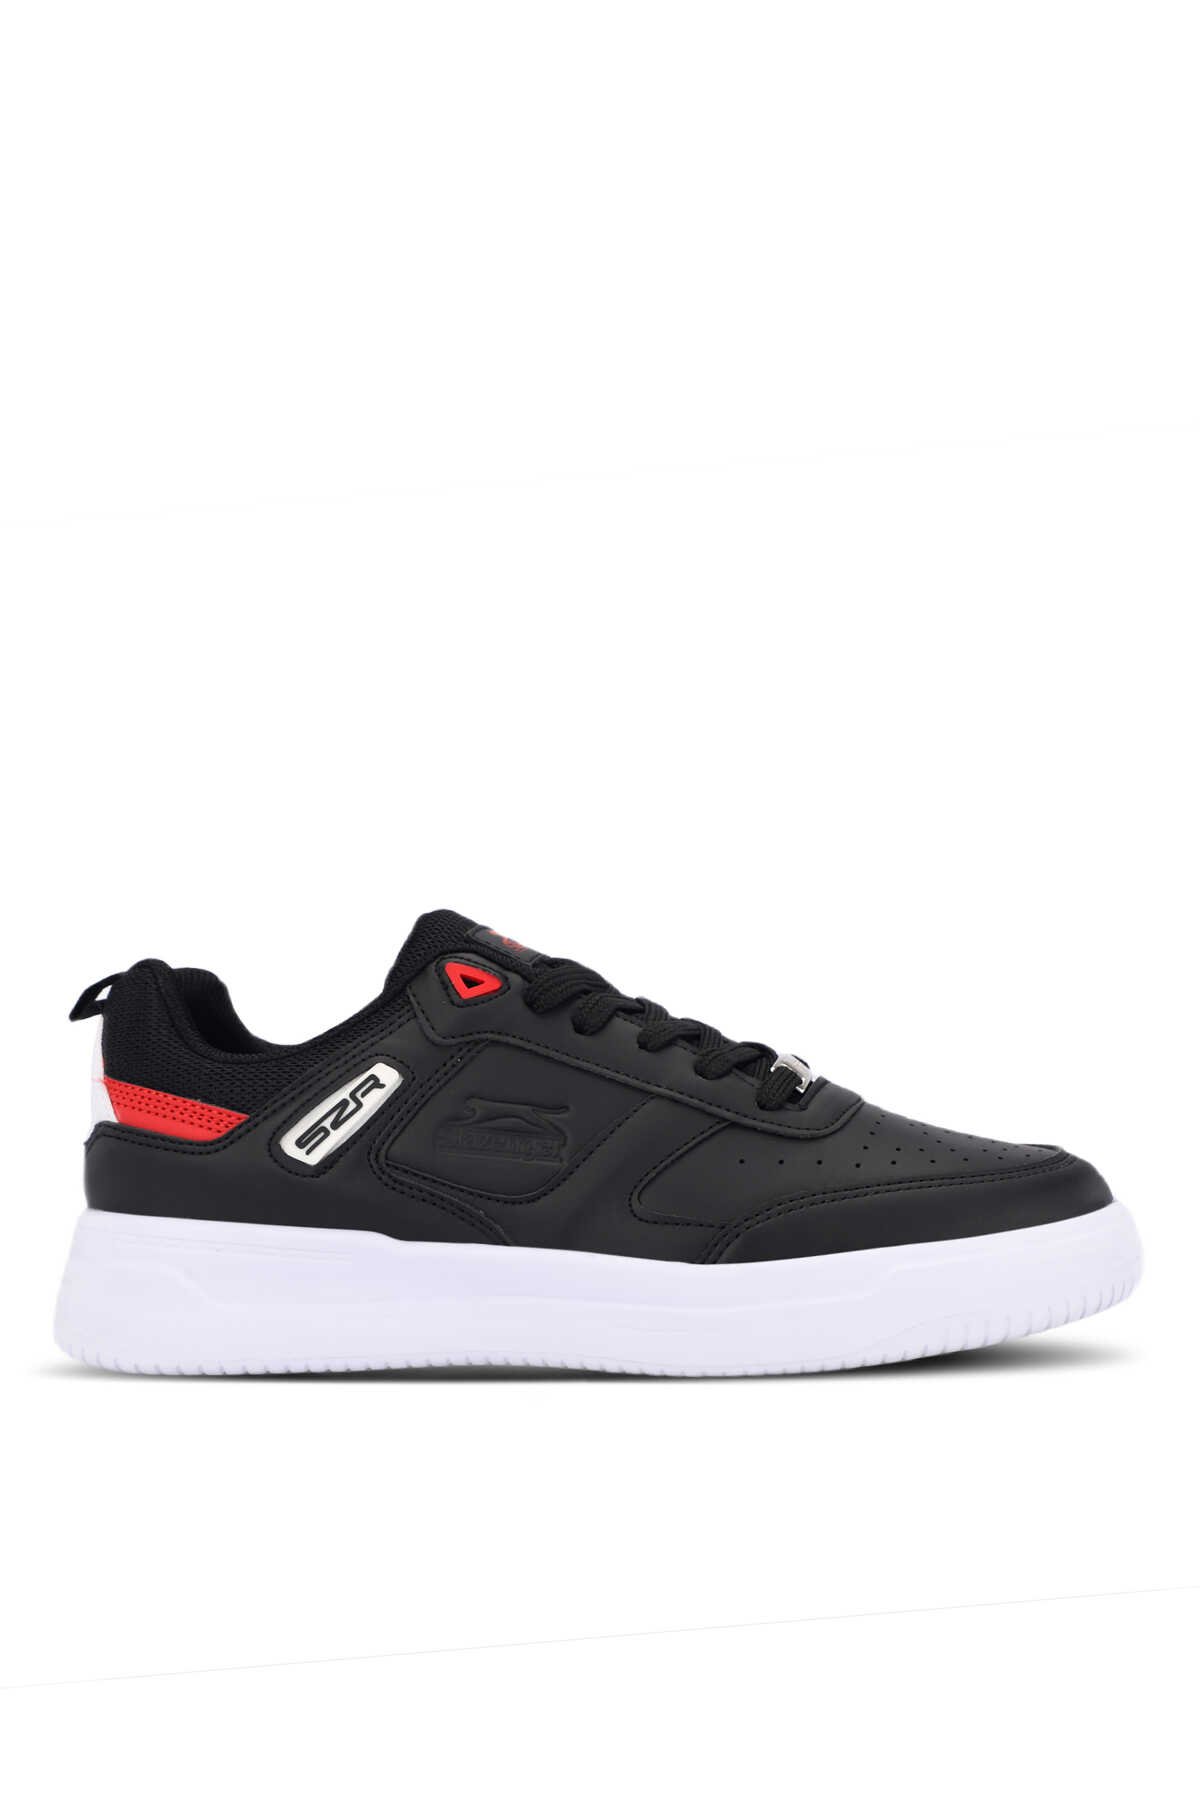 Slazenger - Slazenger PROJECT Erkek Sneaker Ayakkabı Siyah / Beyaz